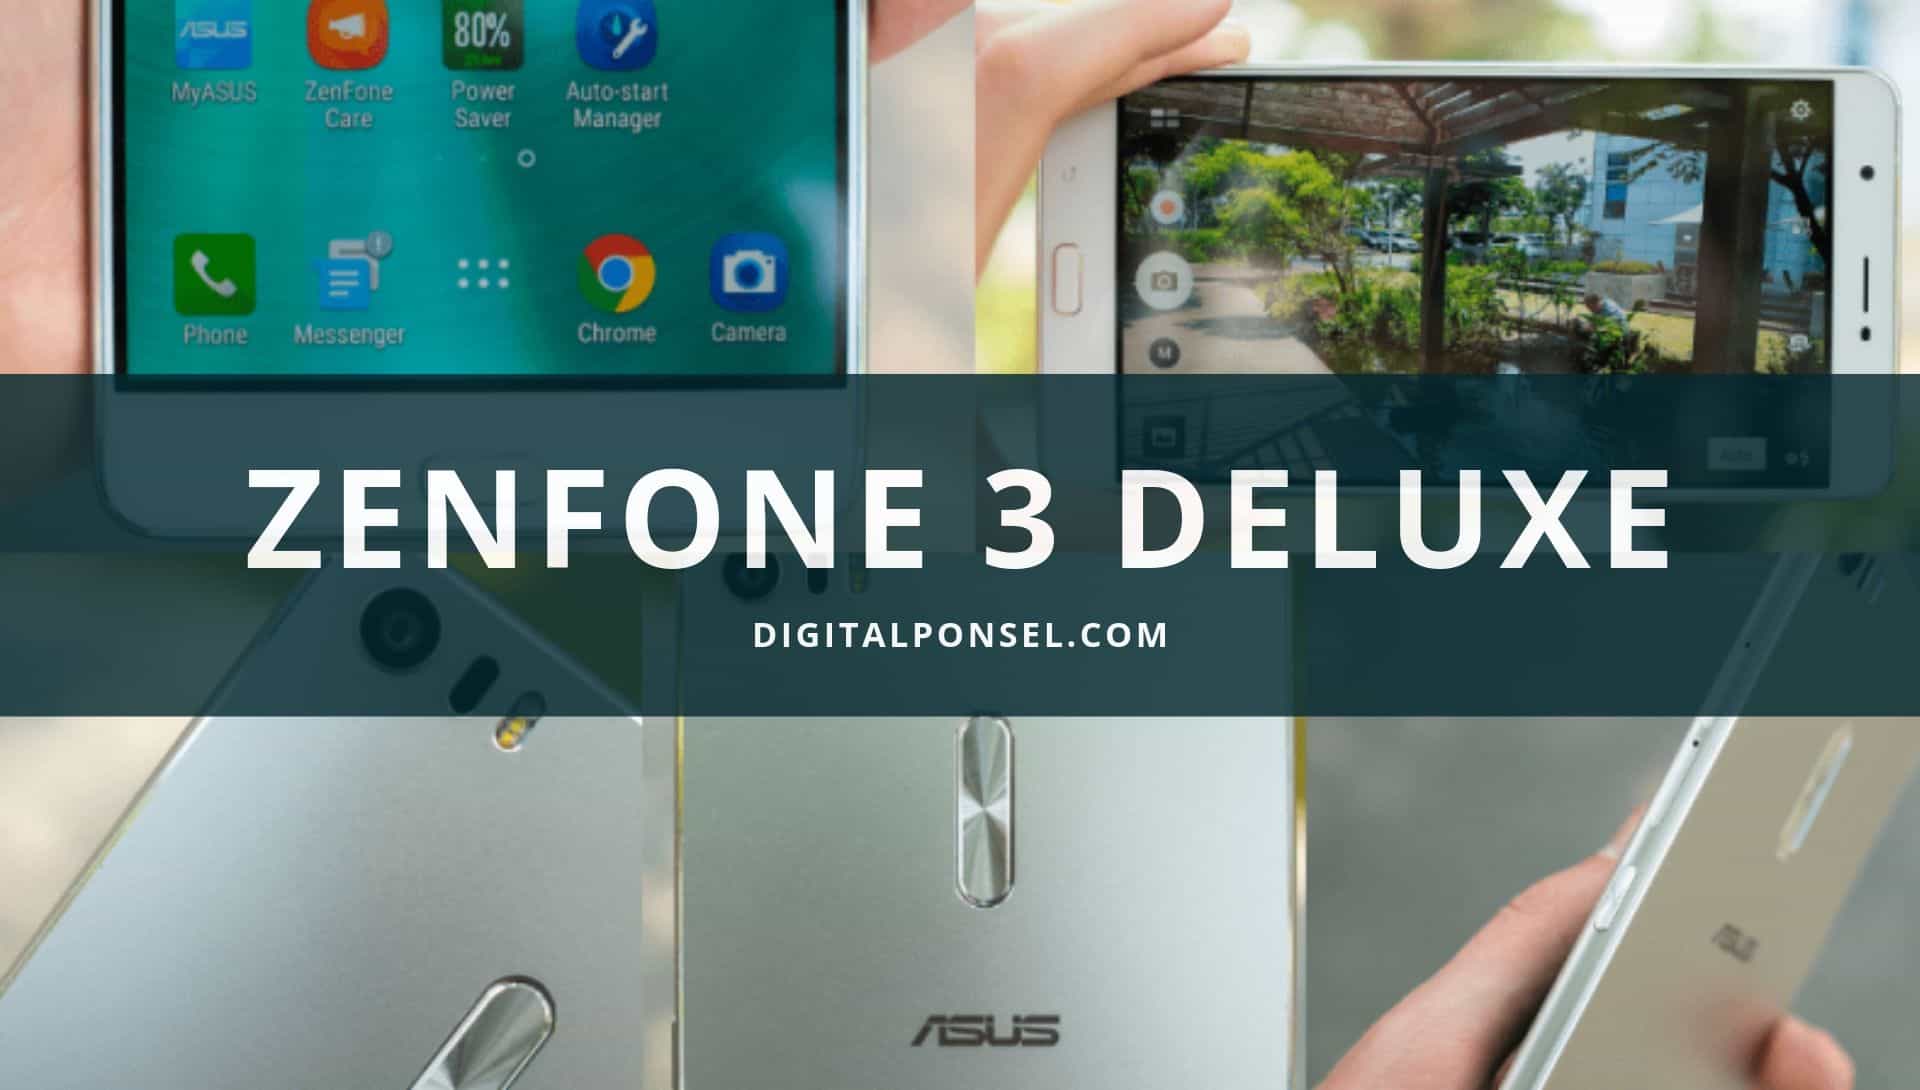 Harga Asus Zenfone 3 Deluxe Terbaru dan Spesifikasi 